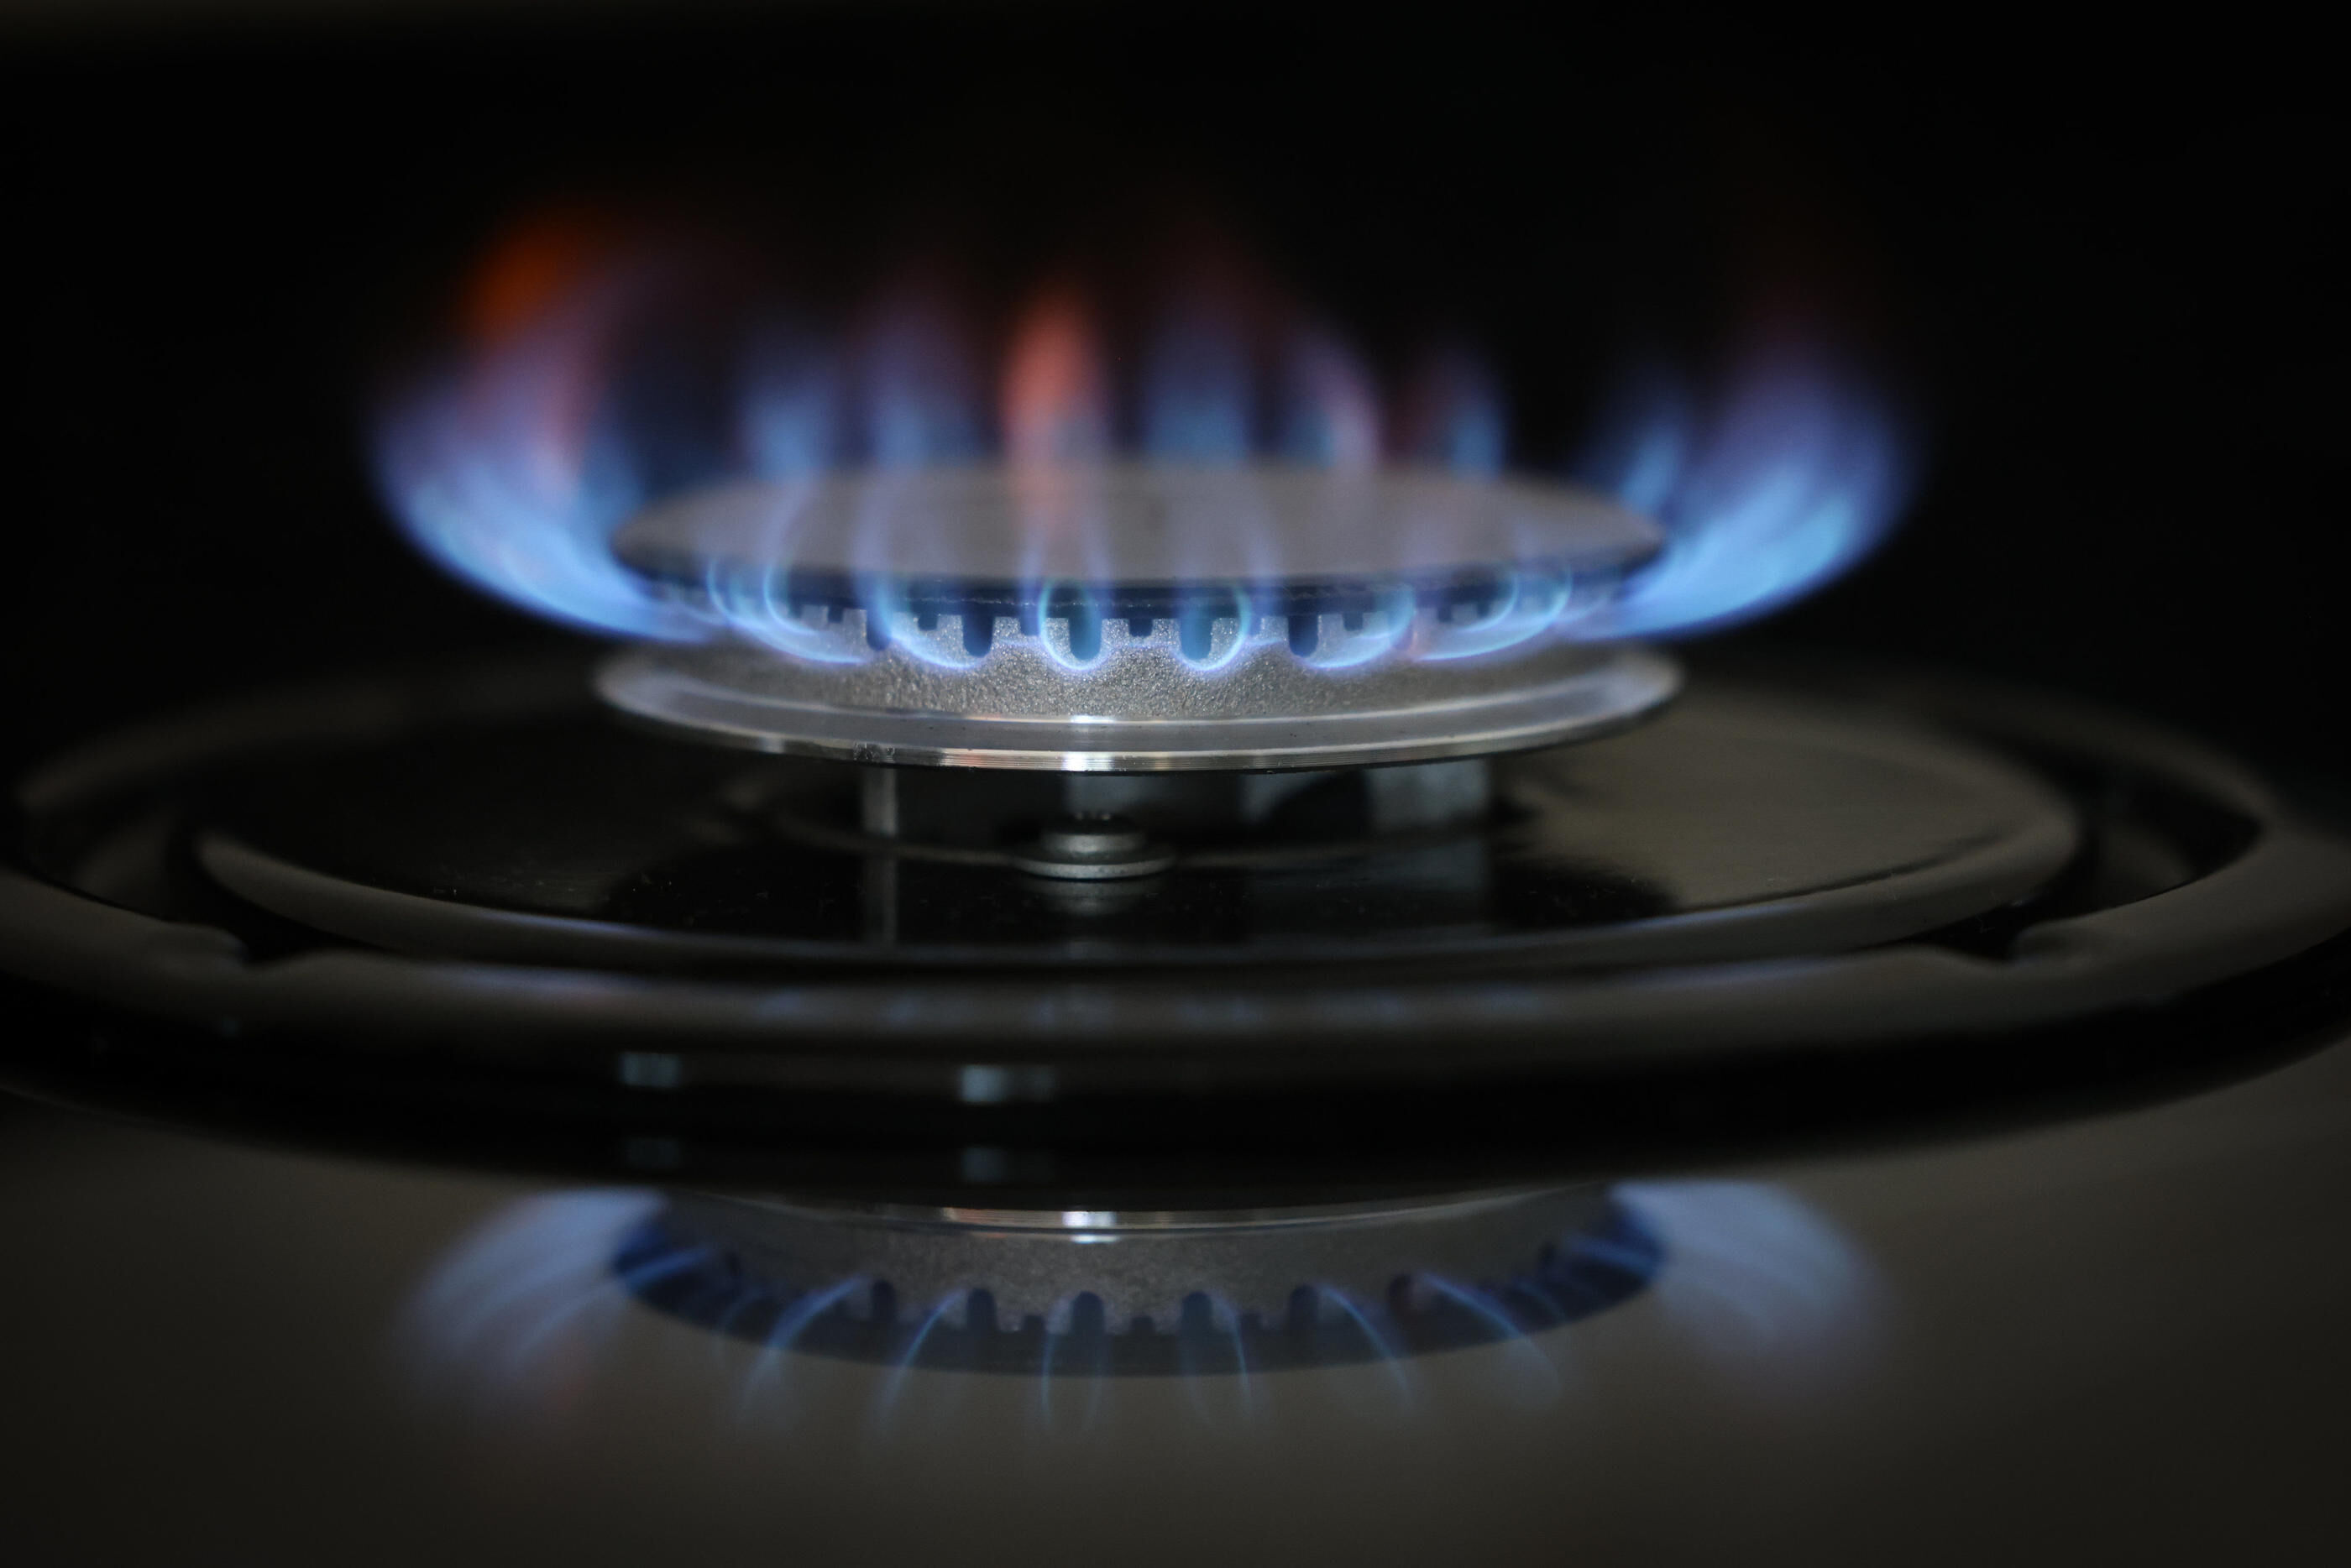  Matière première : le prix de gaz est tombé à son plus bas niveau depuis février 2022 